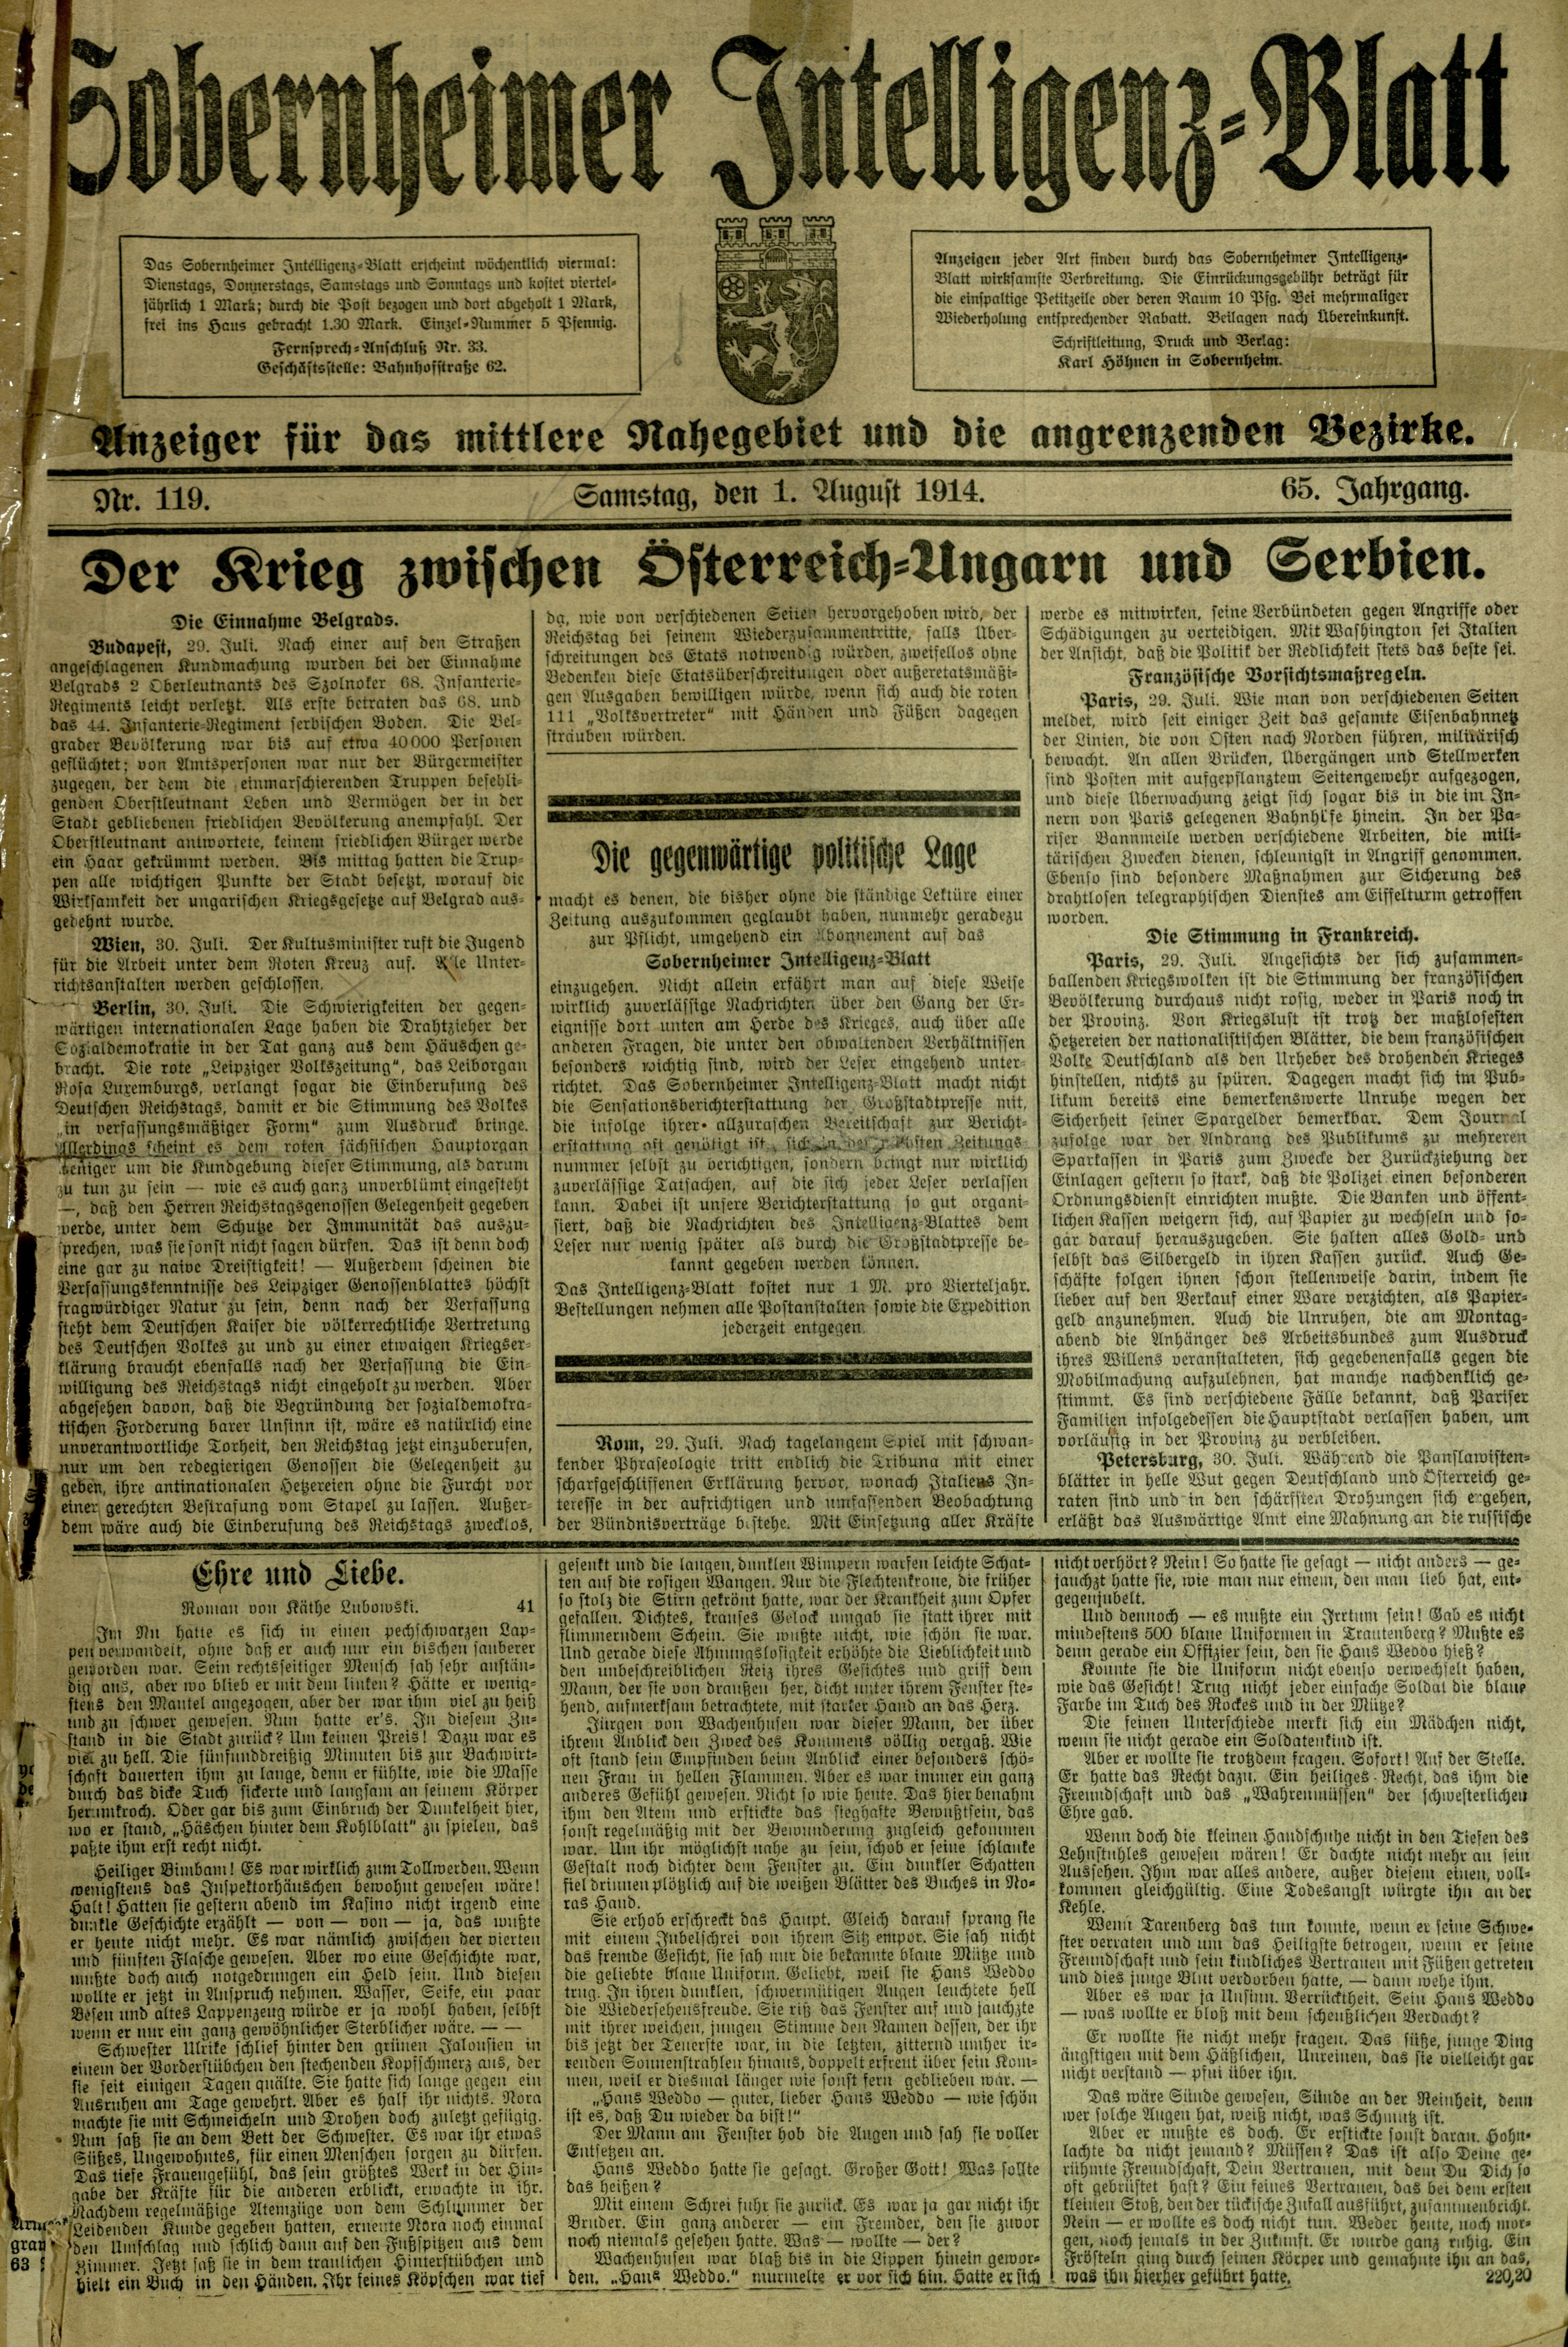 Zeitung: Sobernheimer Intelligenzblatt; August 1914, Jg. 65 Nr. 119 (Heimatmuseum Bad Sobernheim CC BY-NC-SA)